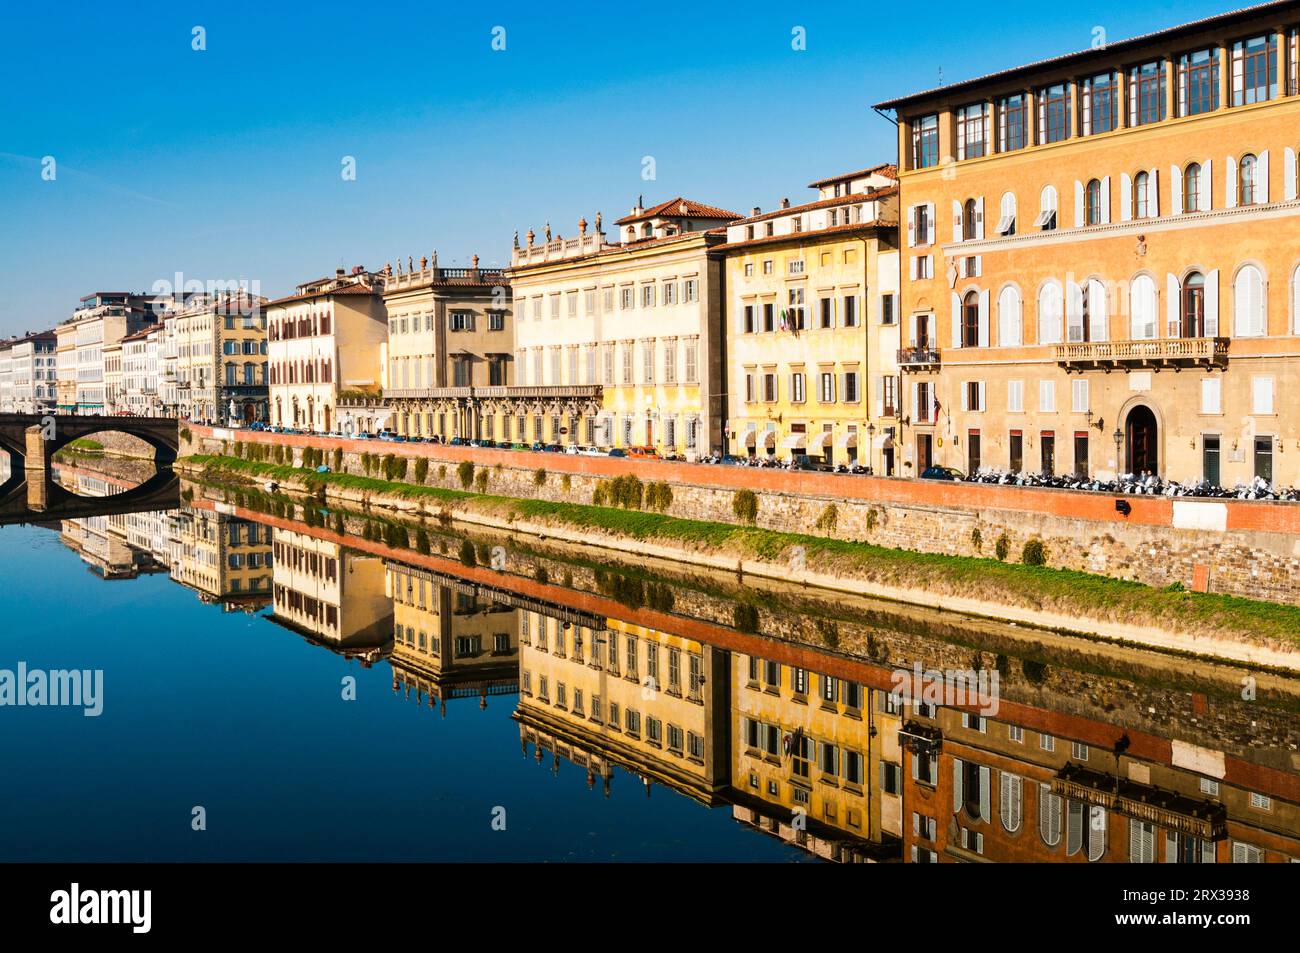 Ponte alla carraia, Lungarno Corsini, Arno River, Firenze, Tuscany, Italy Stock Photo